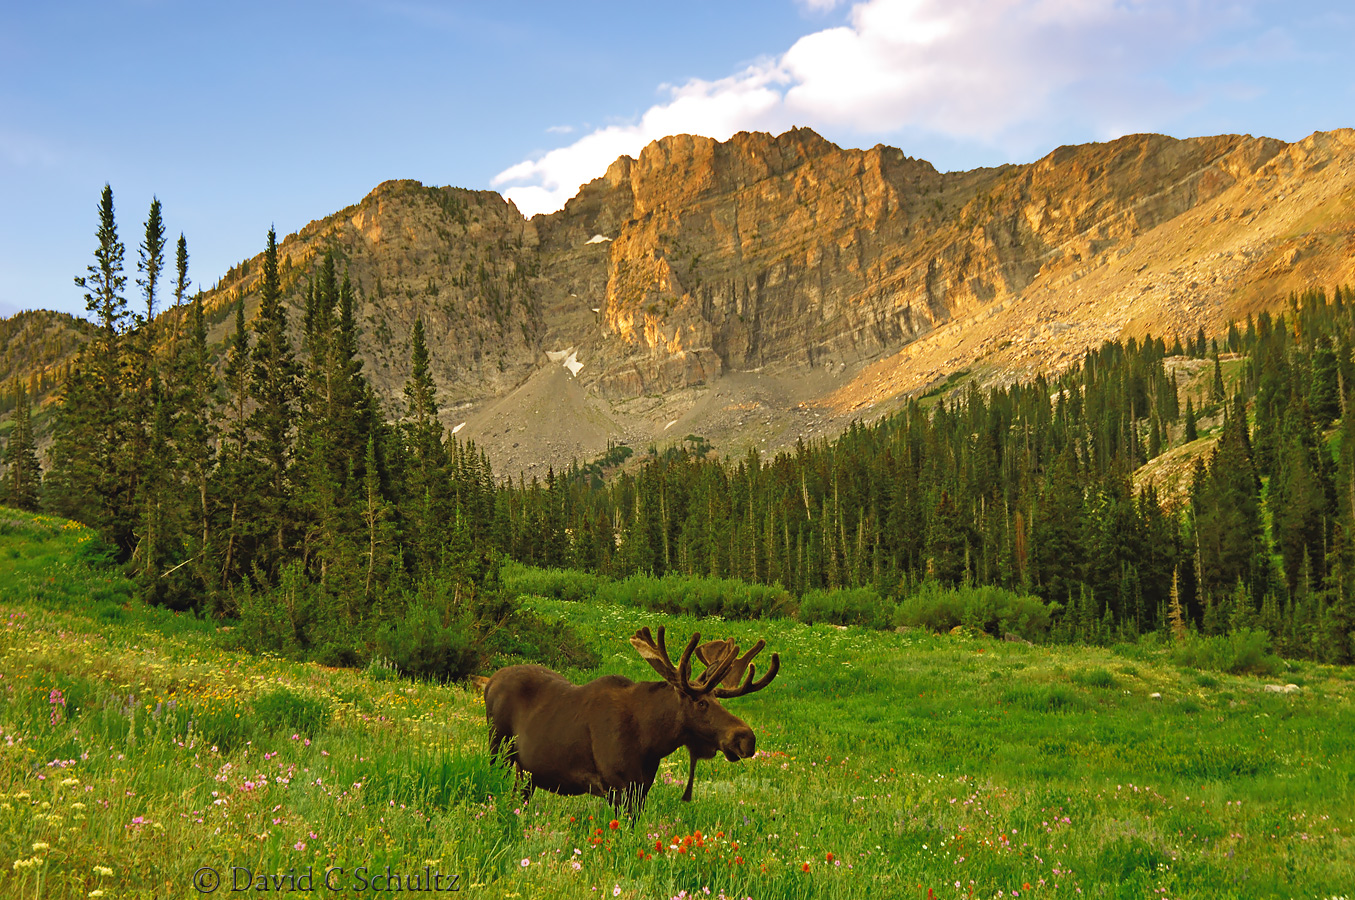 Bull moose at Albion Basin, Utah - Image #161-339